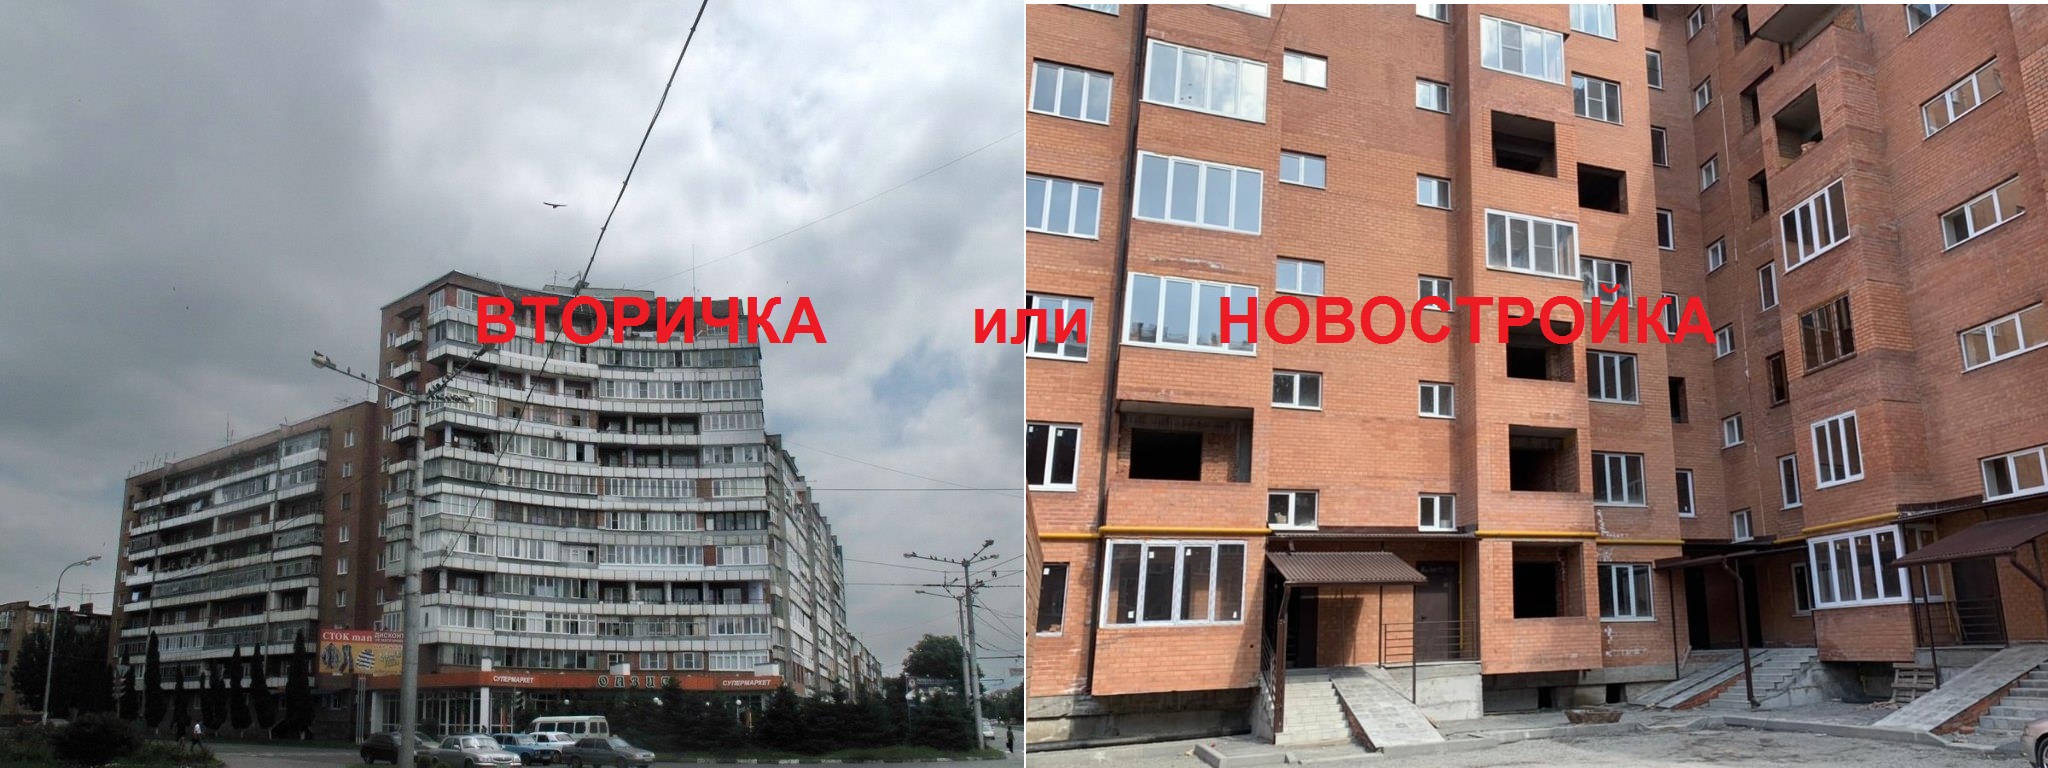 Новостройка или вторичка - строительная компания СТМ, Владикавказ